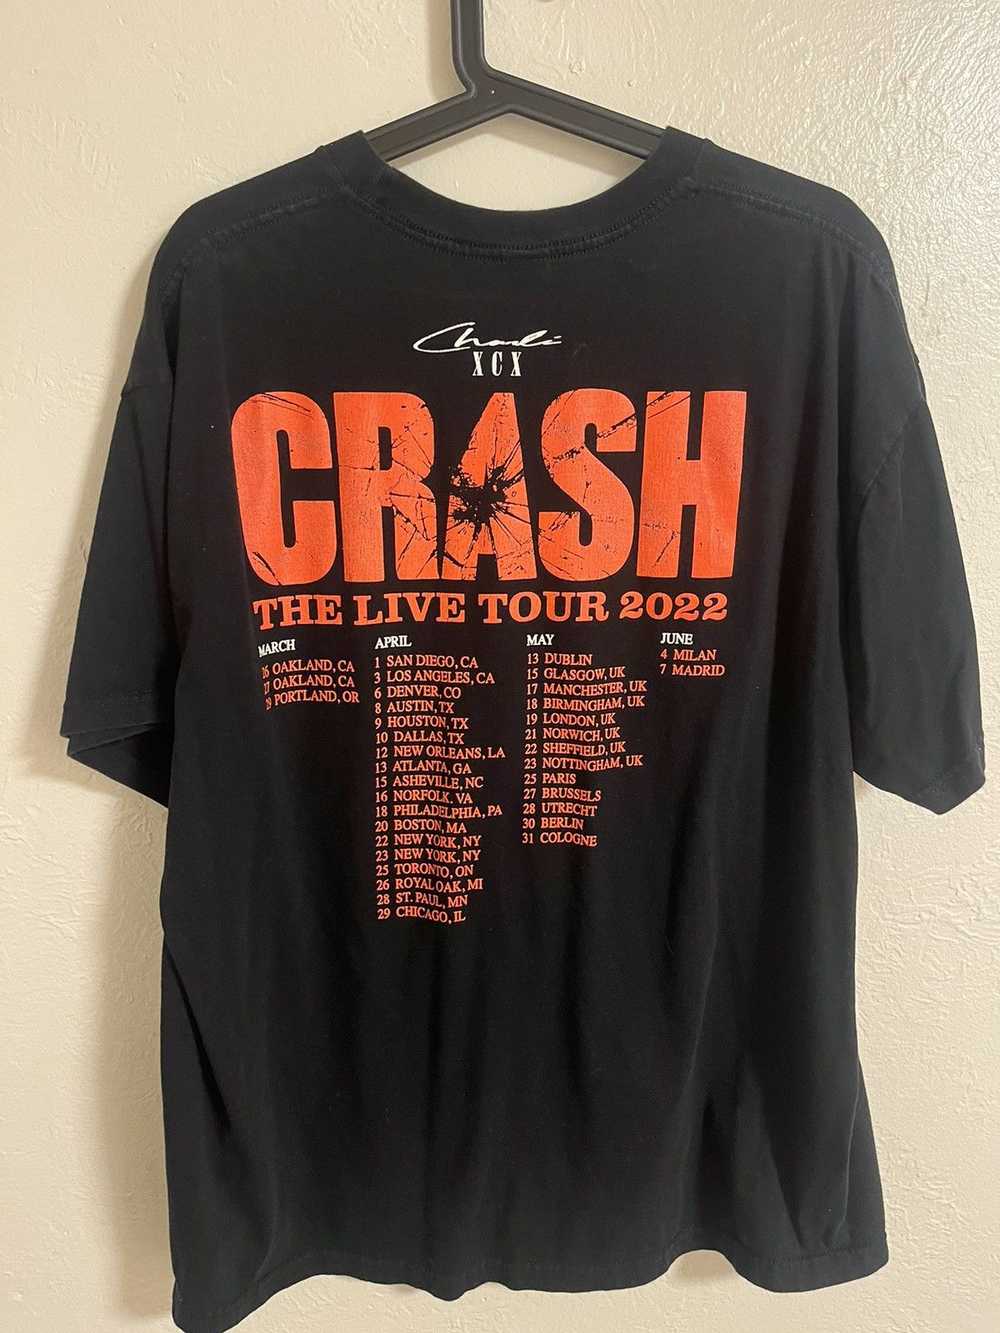 Band Tees Charli XCX Tour Shirt - image 2